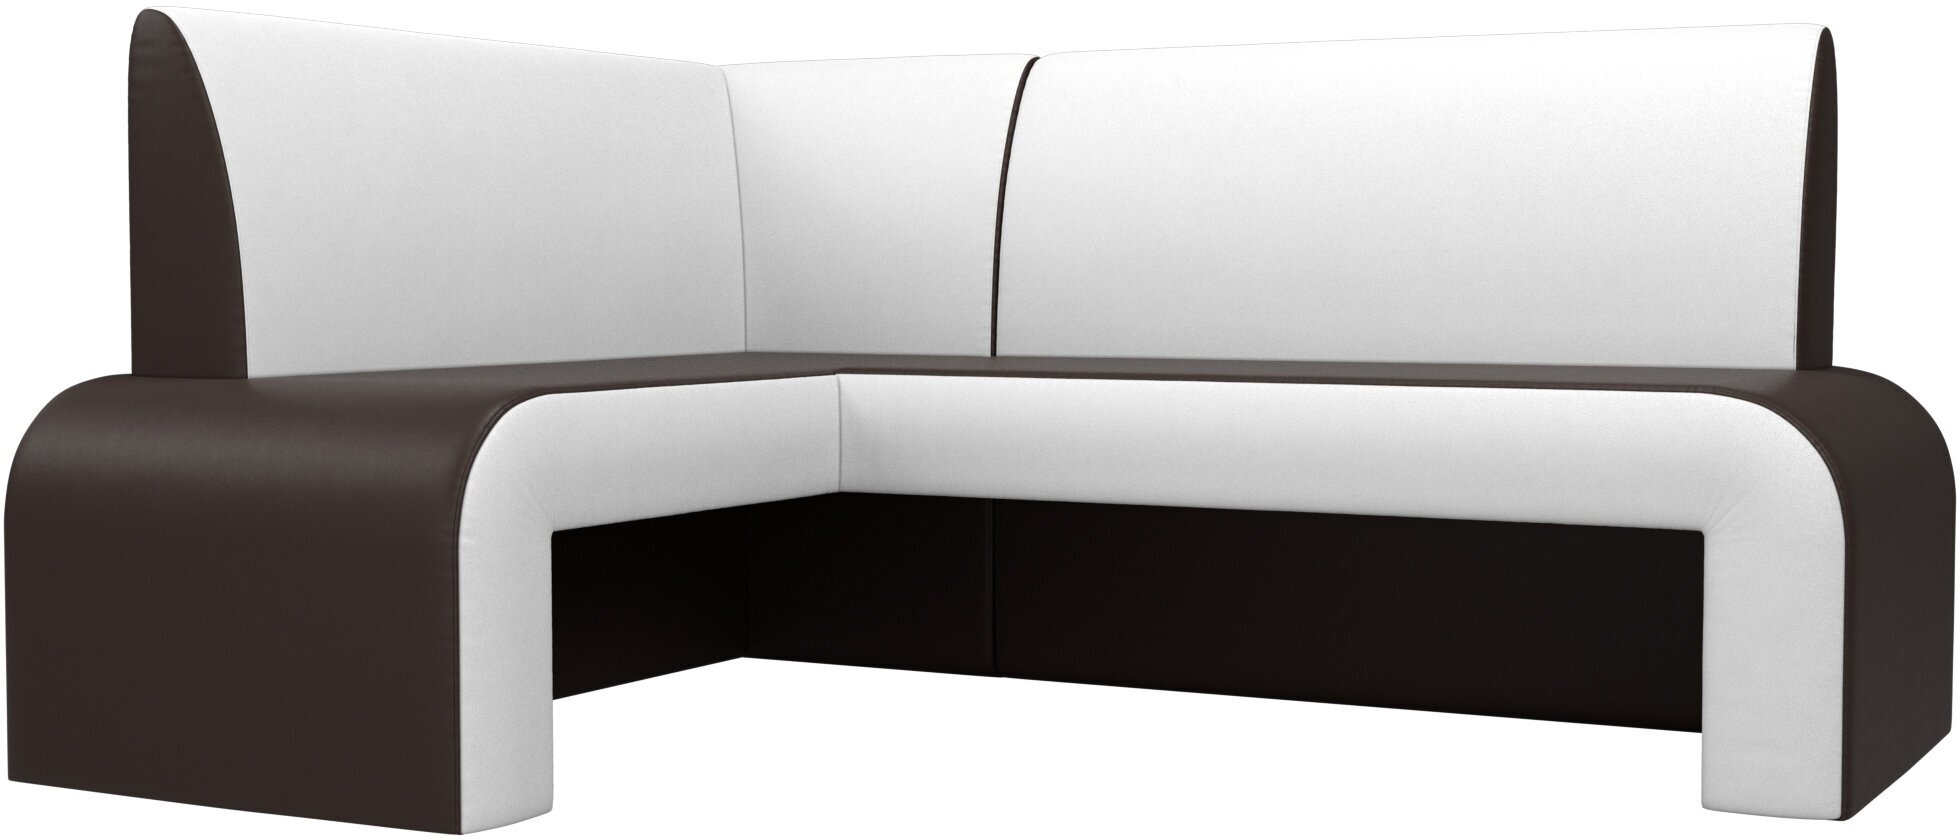 Кухонный угловой диван Кармен левый угол, Экокожа, Модель 28507L